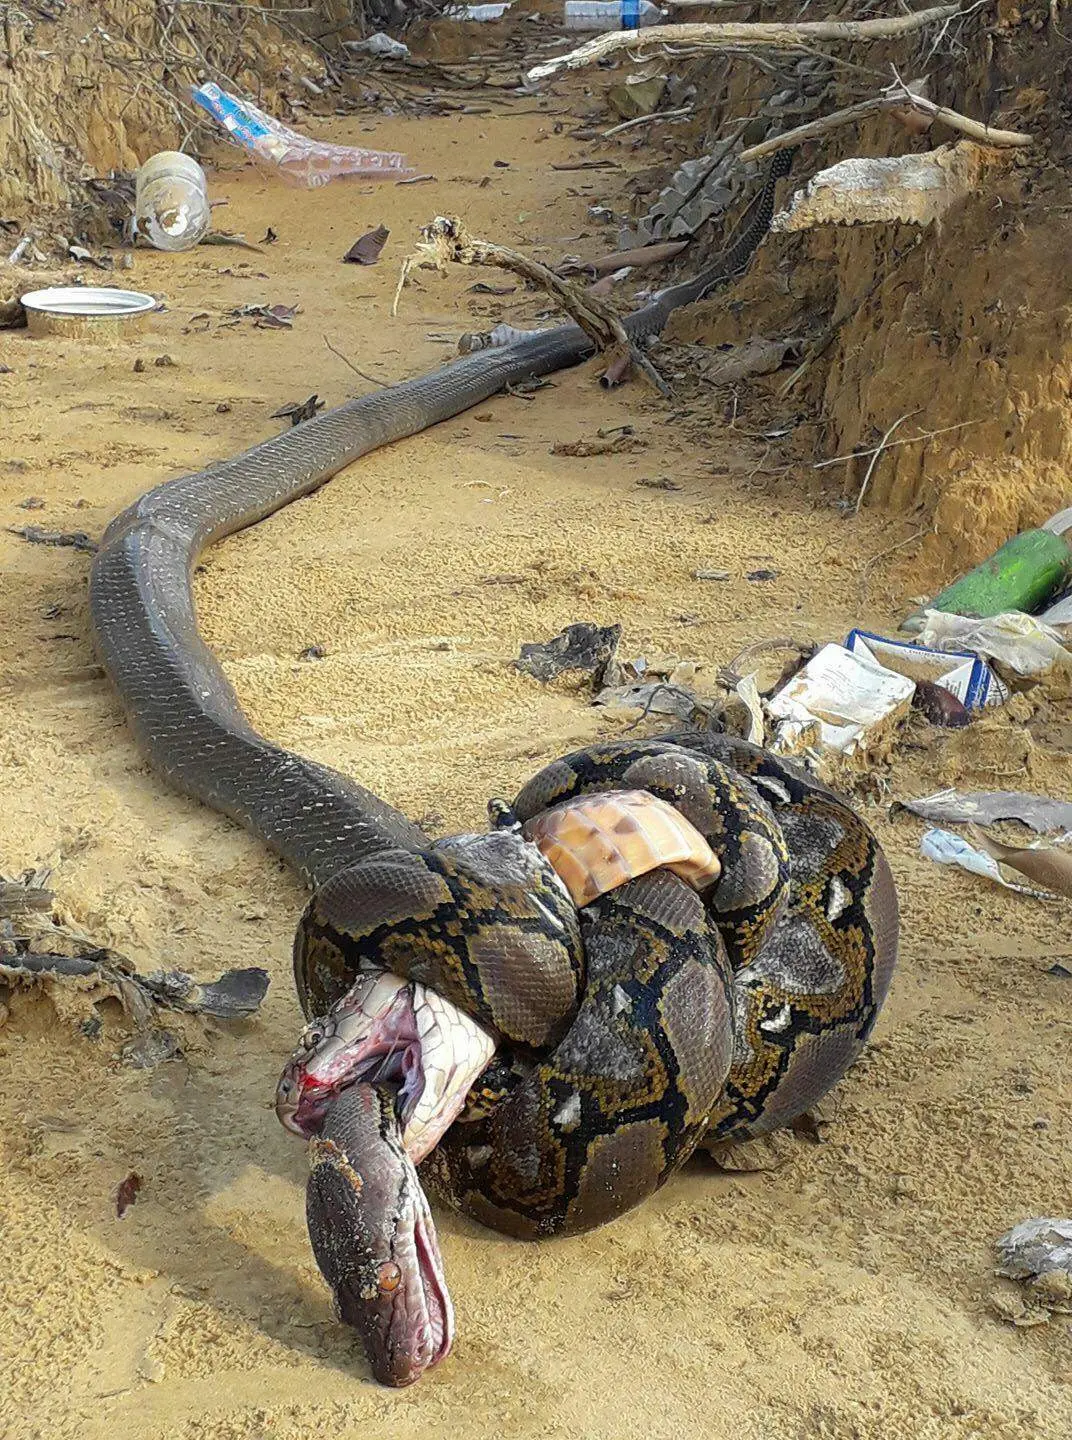 (Credits: original photographer via Imgur) Foto pertarungan Piton dengan King kobra keduanya akhirnya mati dalam gelutan mematikan.